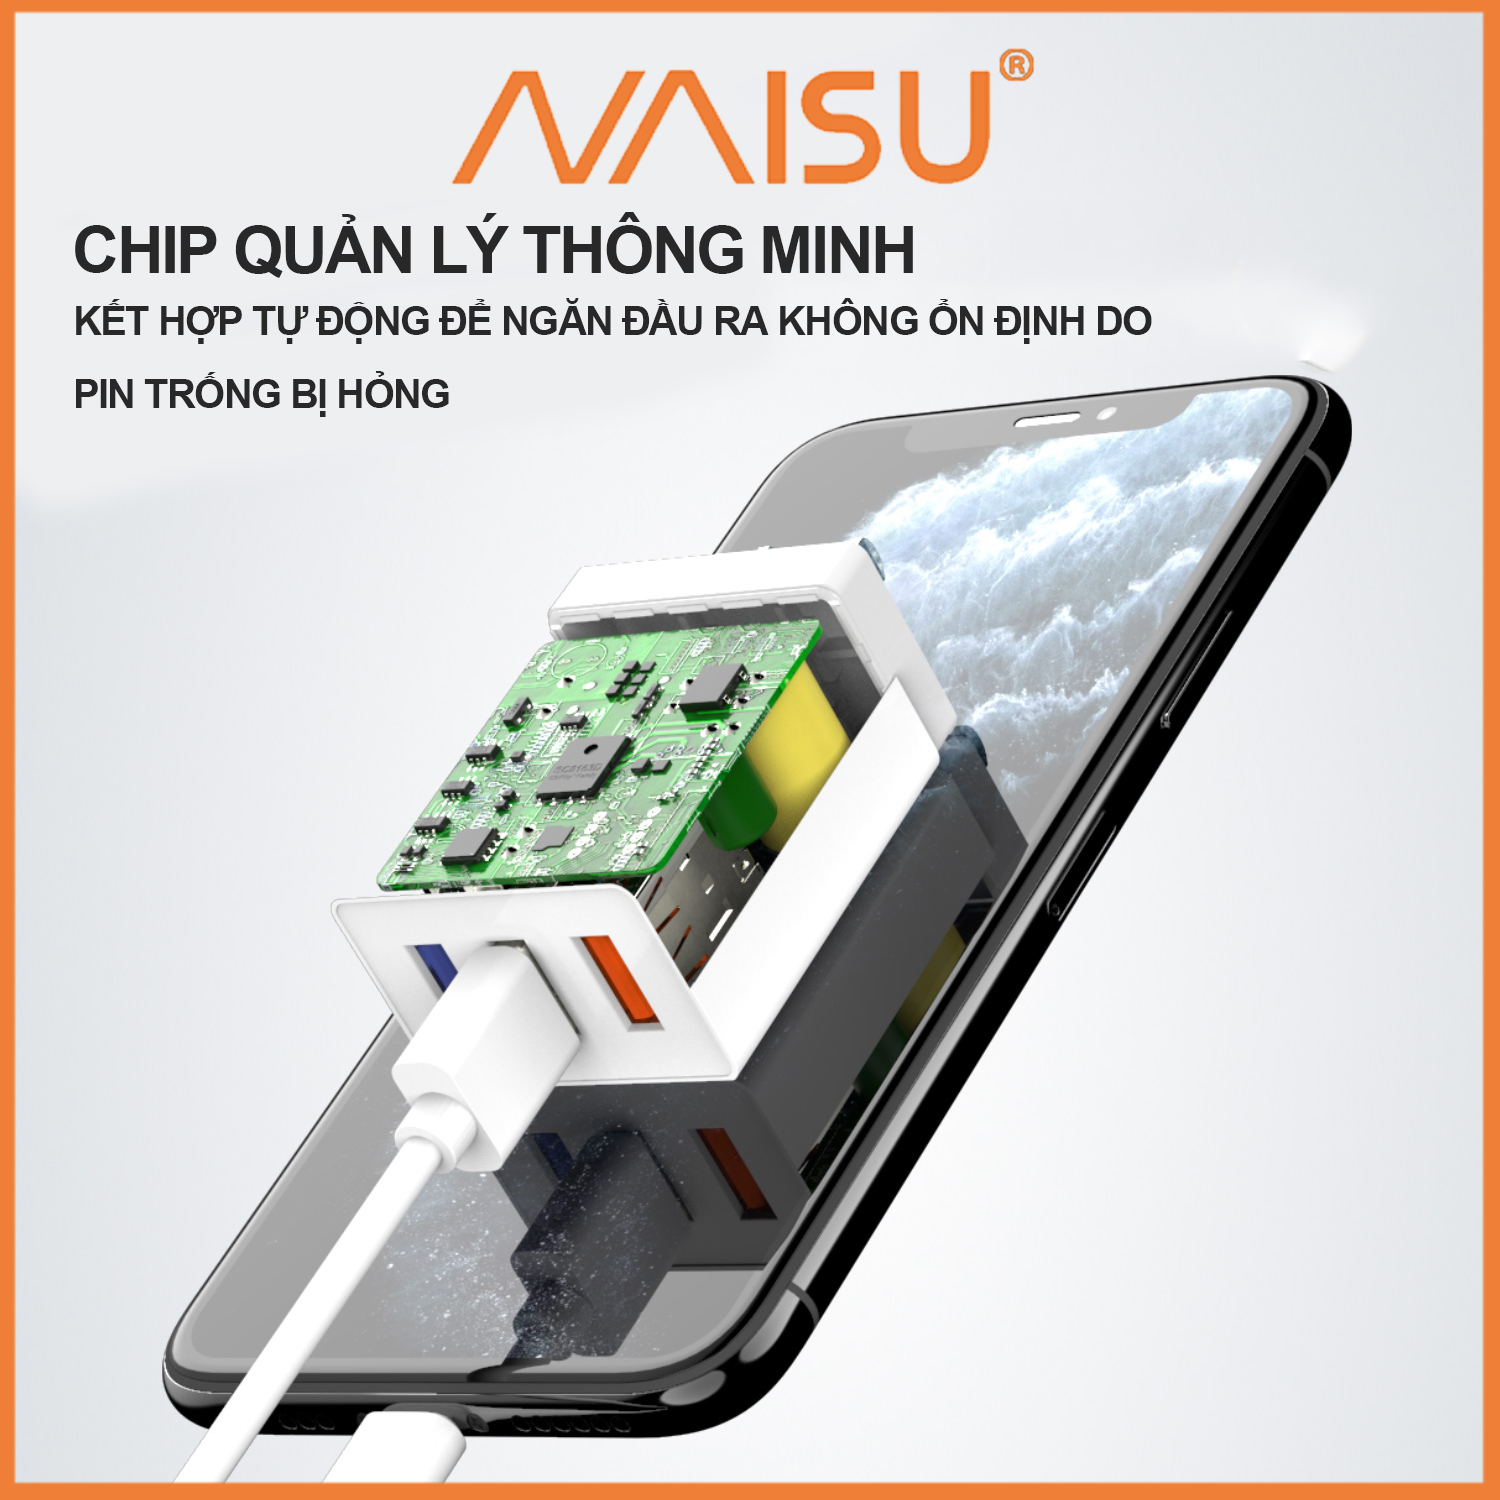 Bộ sạc nhanh, Naisu 3 cổng USB, cáp sạc tùy chọn, hỗ trợ đệm điện thoại IOS Android, NS-3U ID – 1815 - Hàng nhập khẩu